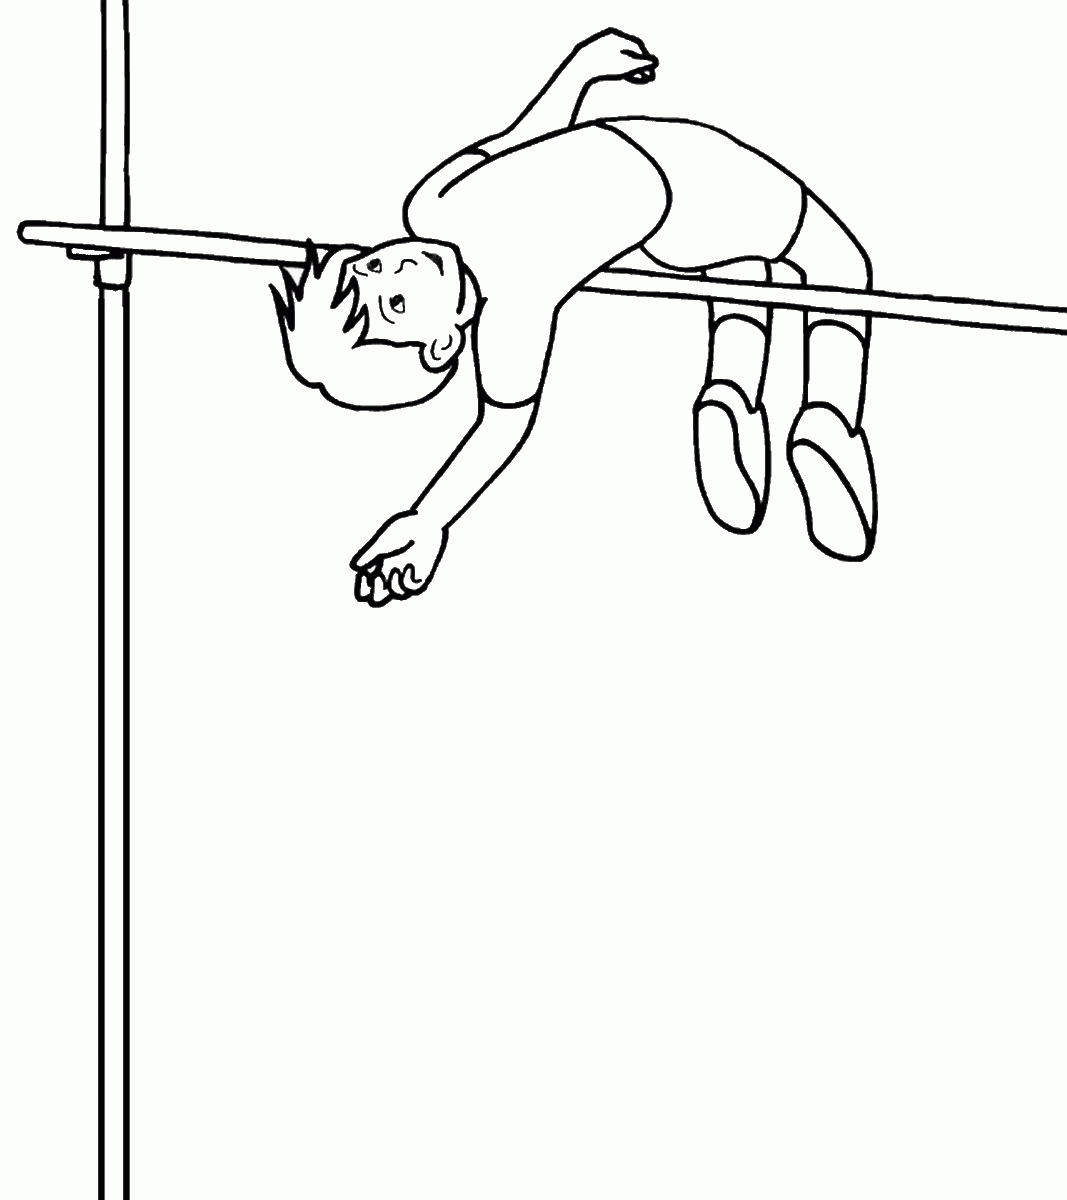 Раскраска для детей про спорт прыжок